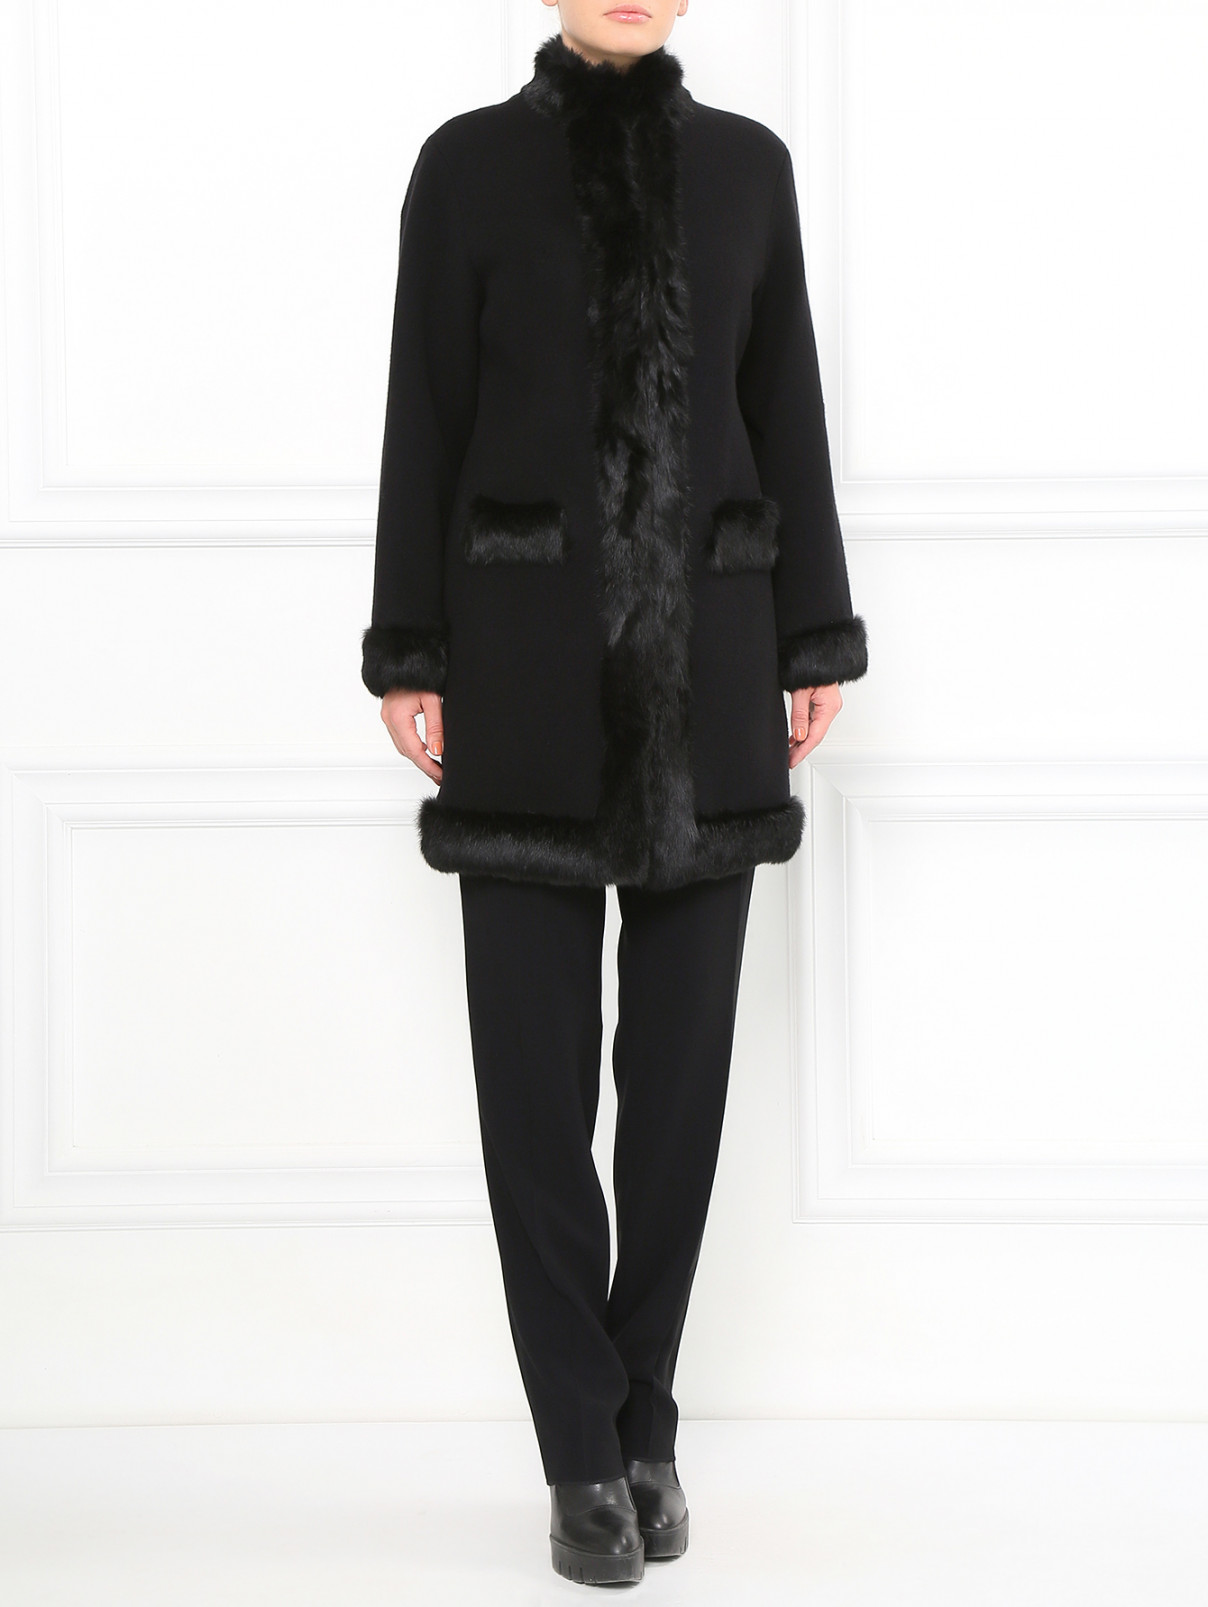 Пальто из шерсти с меховой отделкой Moschino Boutique  –  Модель Общий вид  – Цвет:  Черный